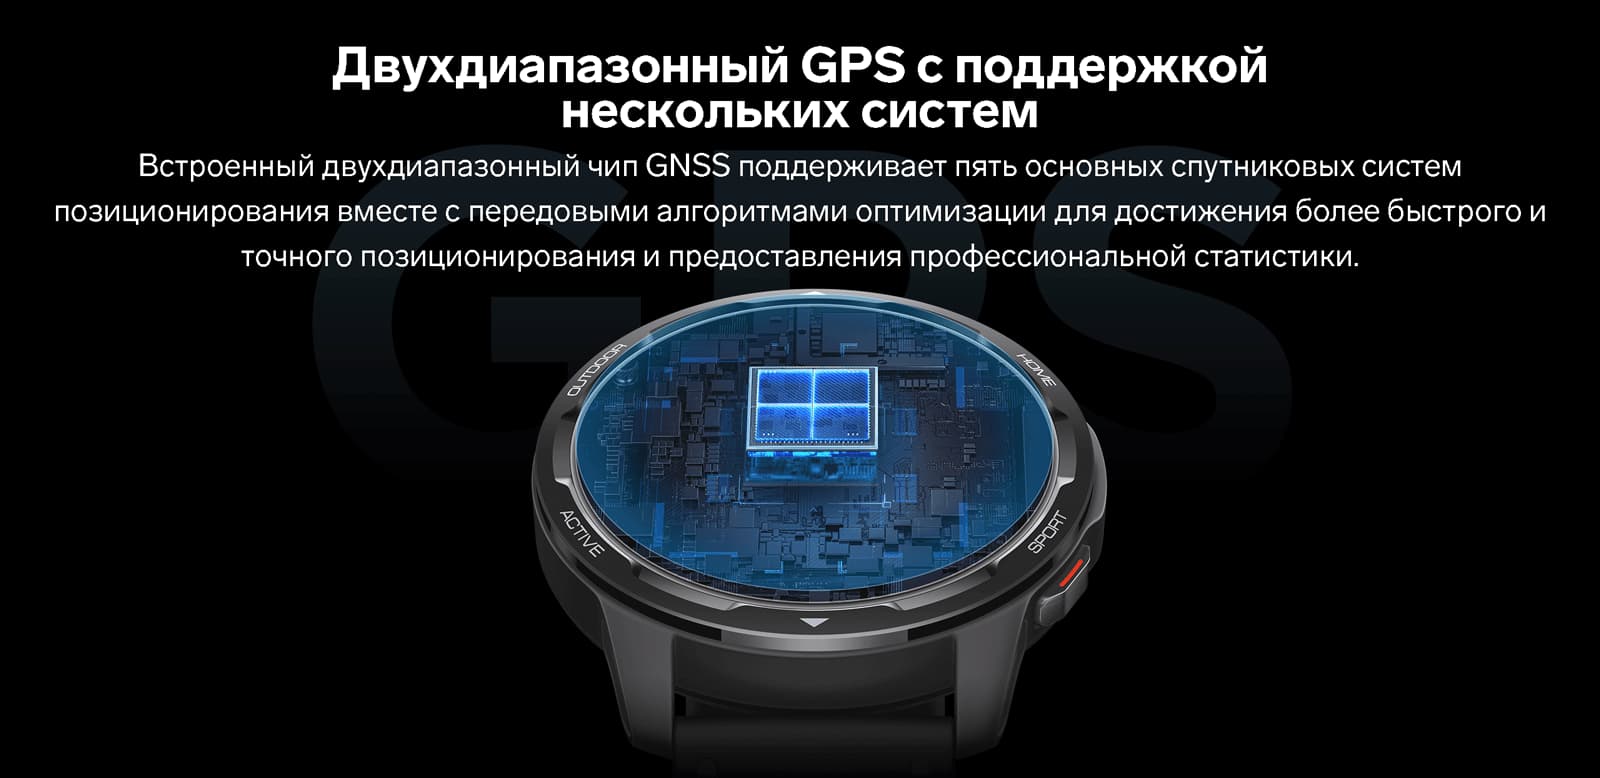 Двухдиапазонный GPS с поддержкой нескольких систем